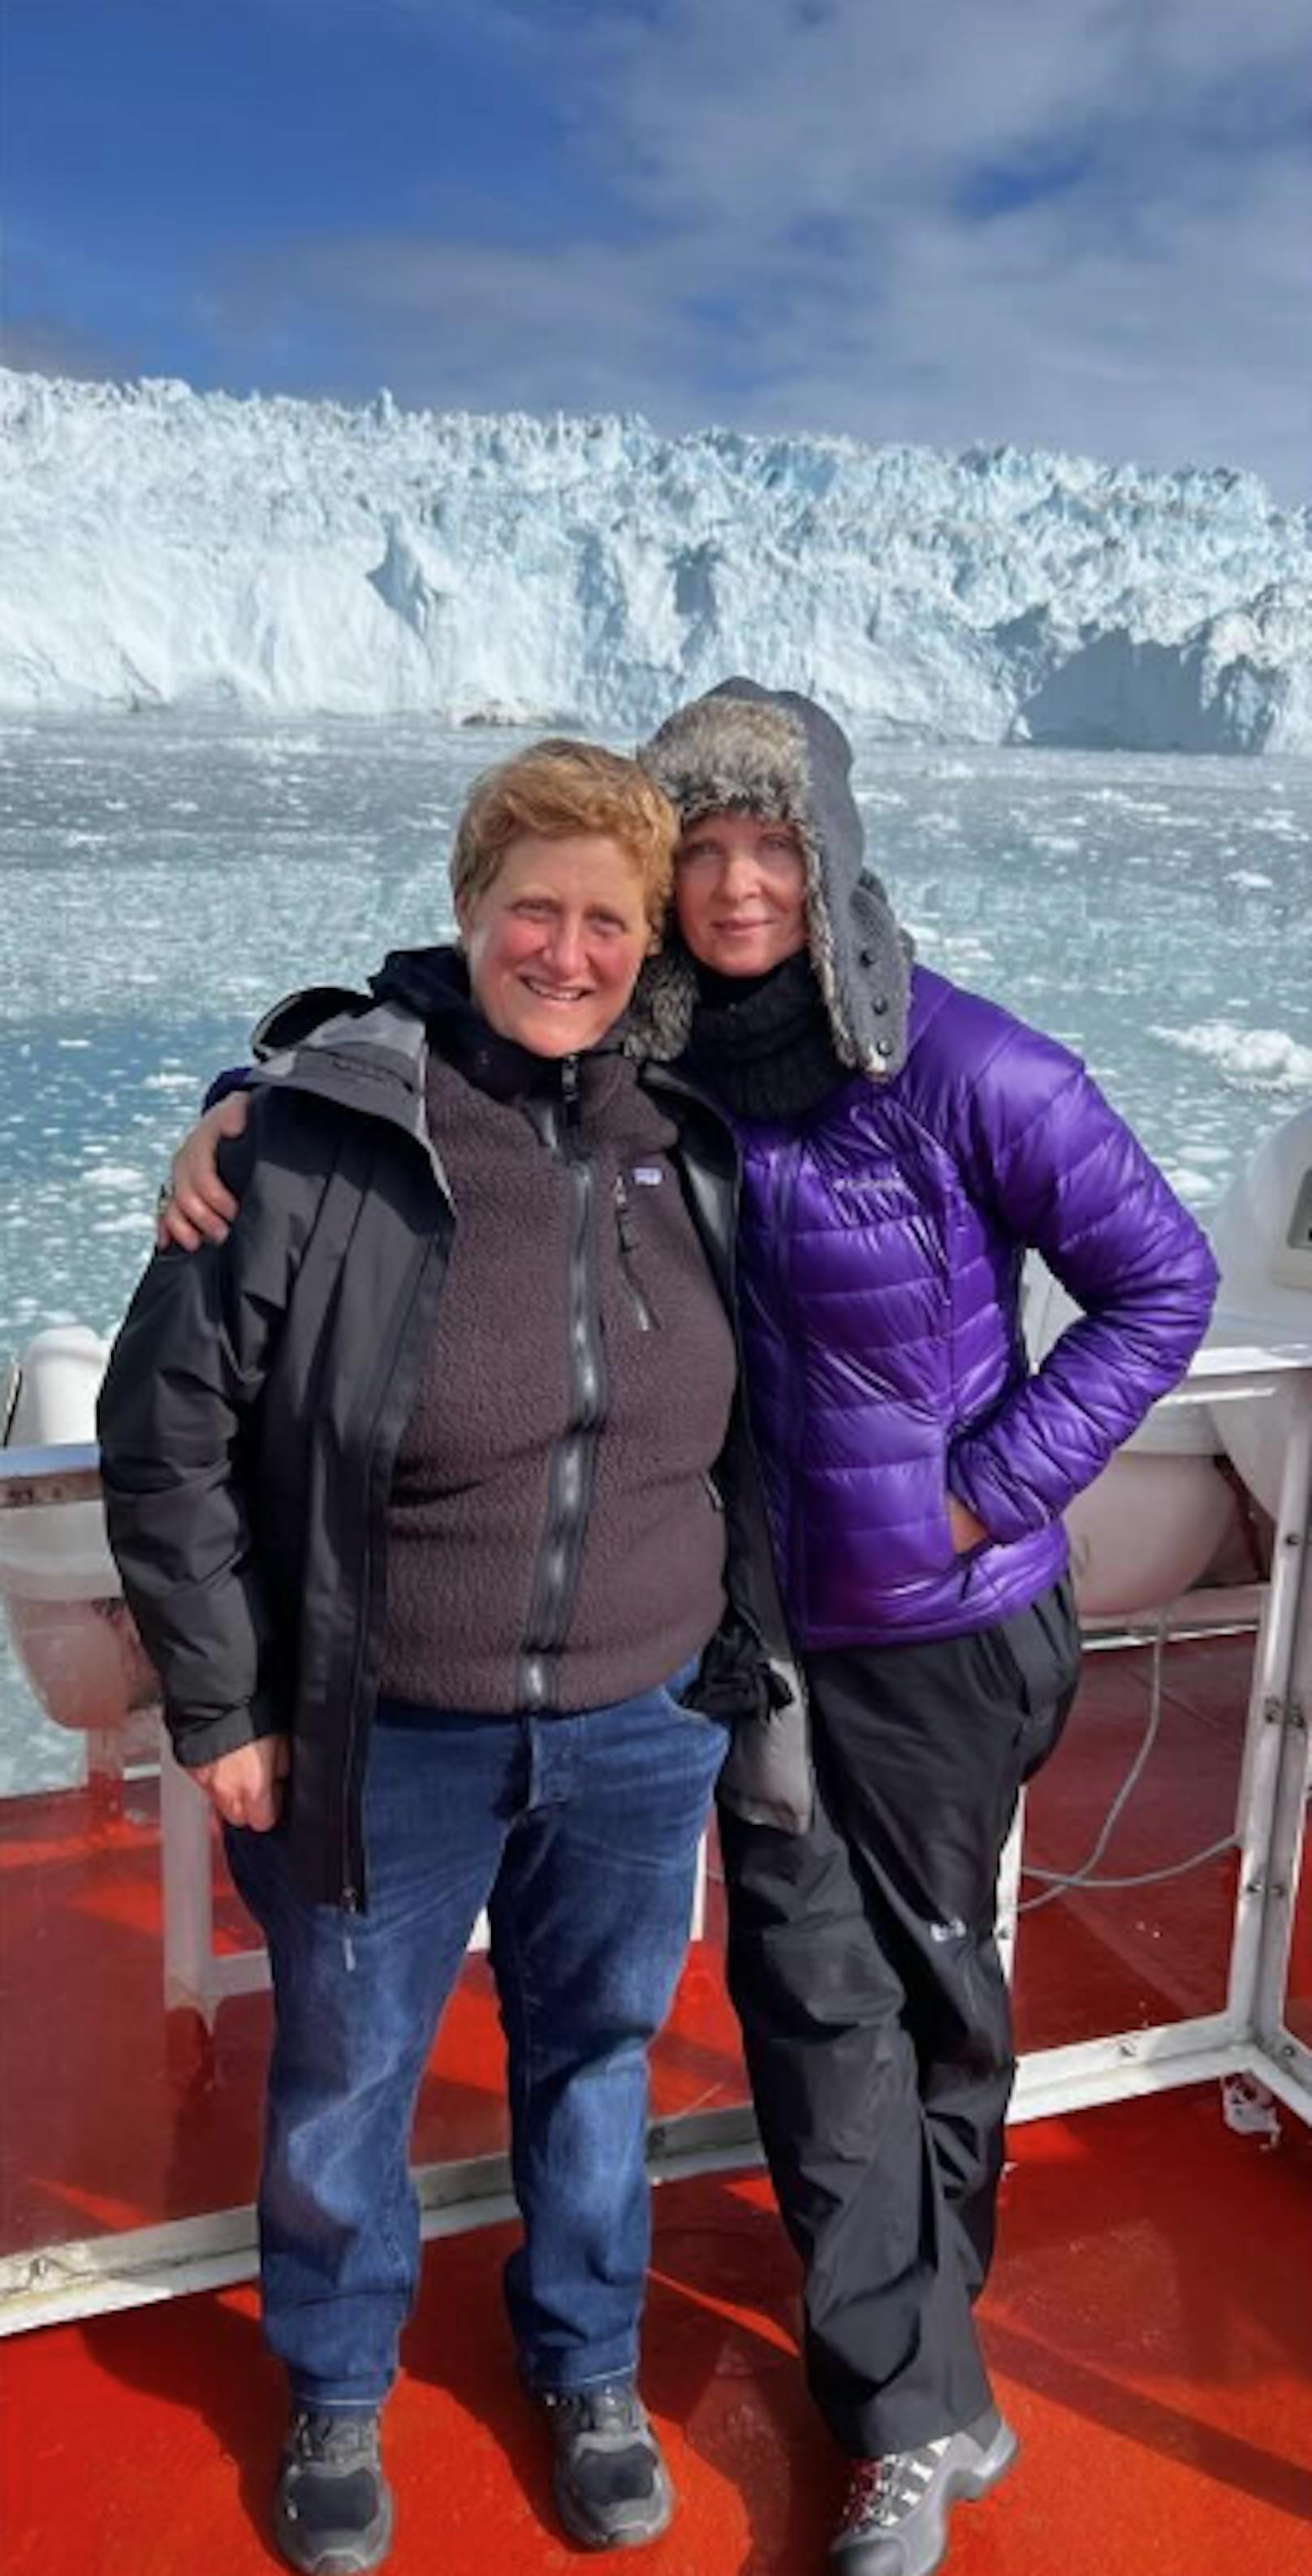 Kälter wurde es auf den Valentinstagsnachrichten von "Sex and the City"-Darstellerin Cynthia Nixon. Sie grüßte samt Eisbergen und Winterjacke mit ihrer Ehefrau mit Bildern ihrer Flitterwochen in Grönland, Island und Norwegen.